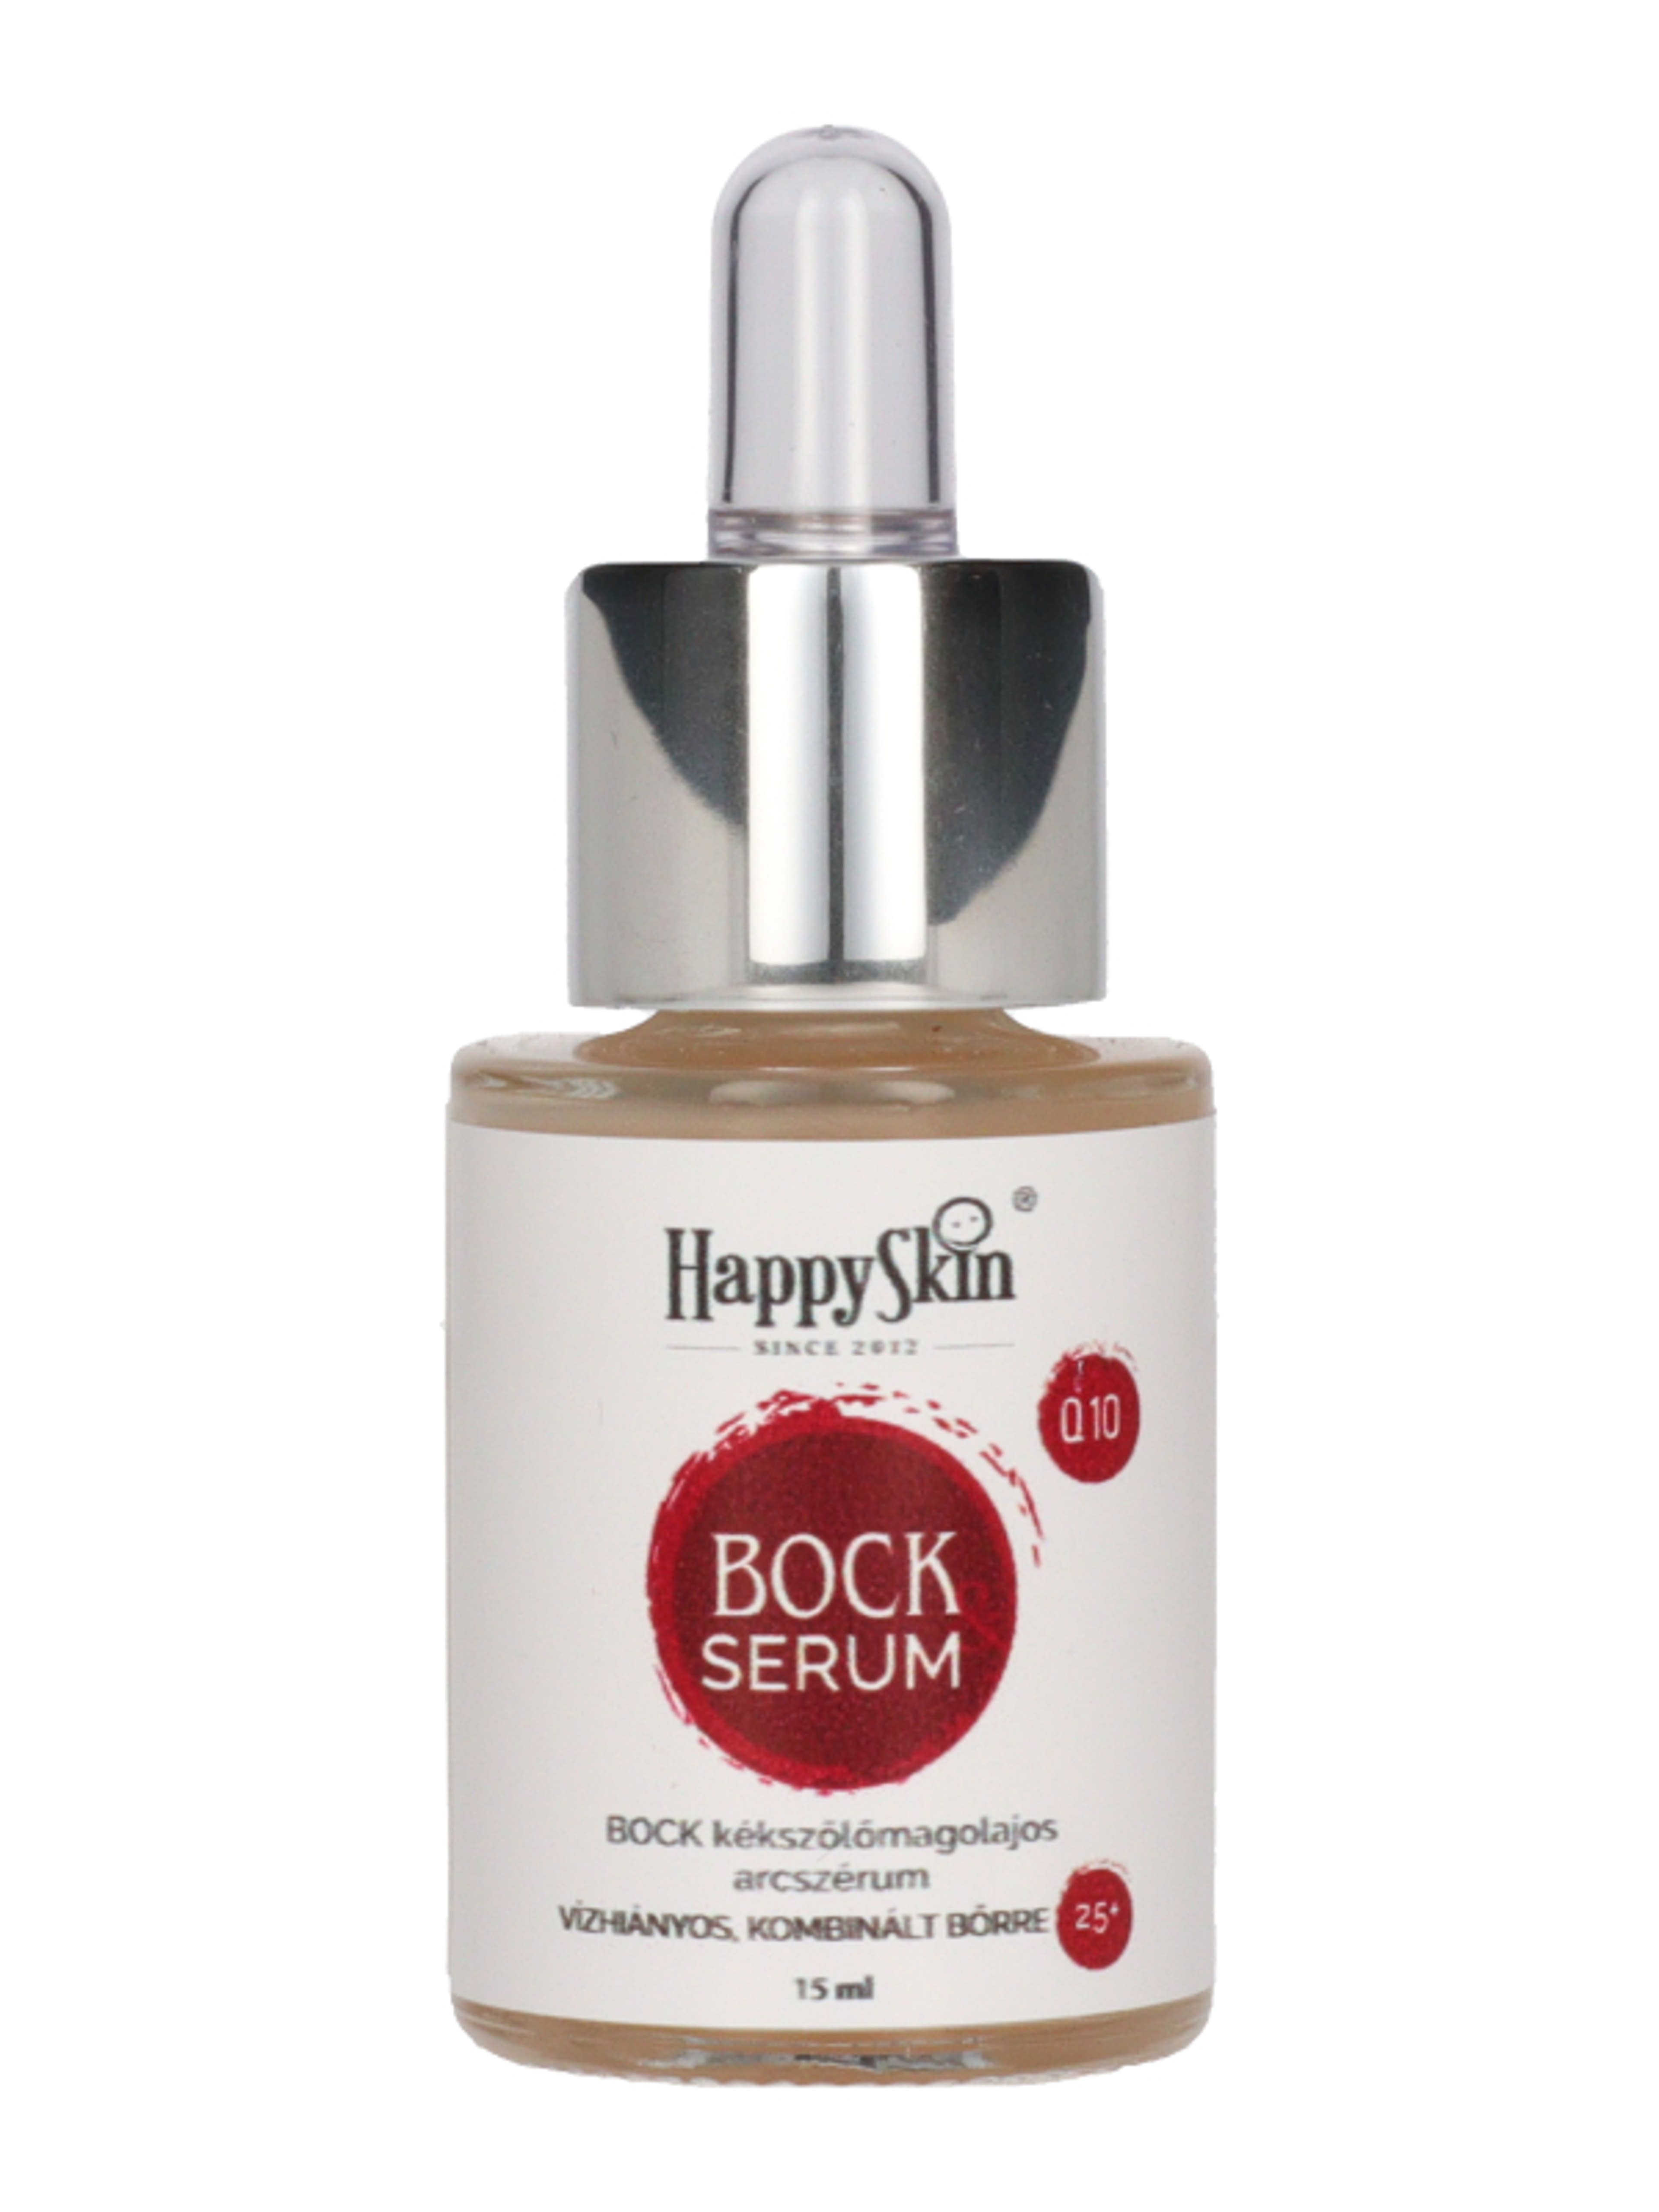 HappySkin Bock szérum kékszölőmagolajos - 15 ml